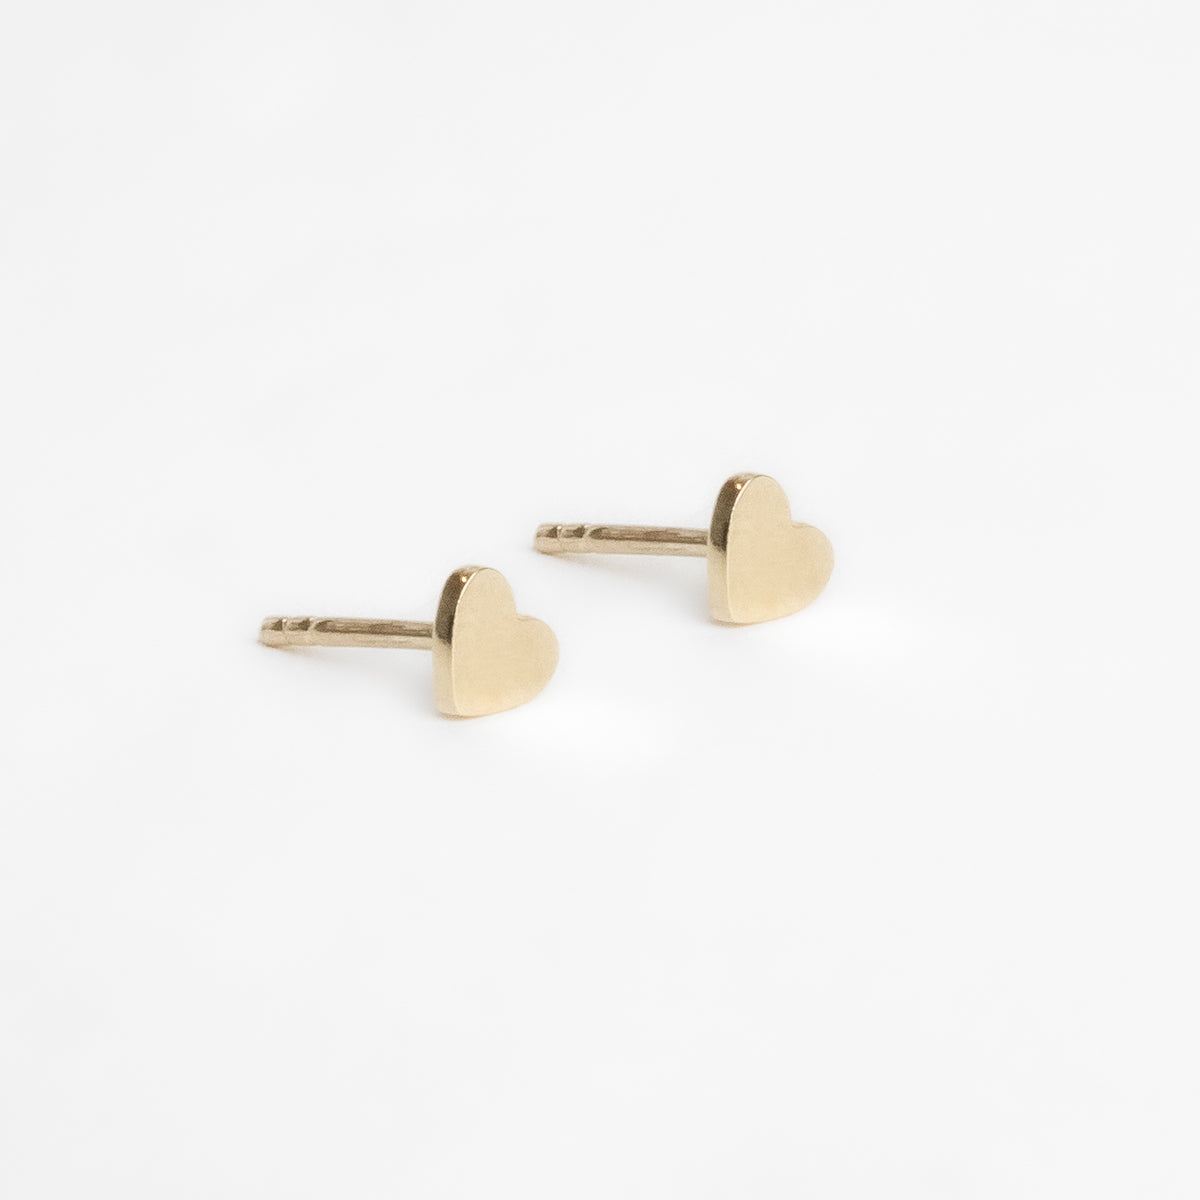 Fixed heart earrings in 10k gold